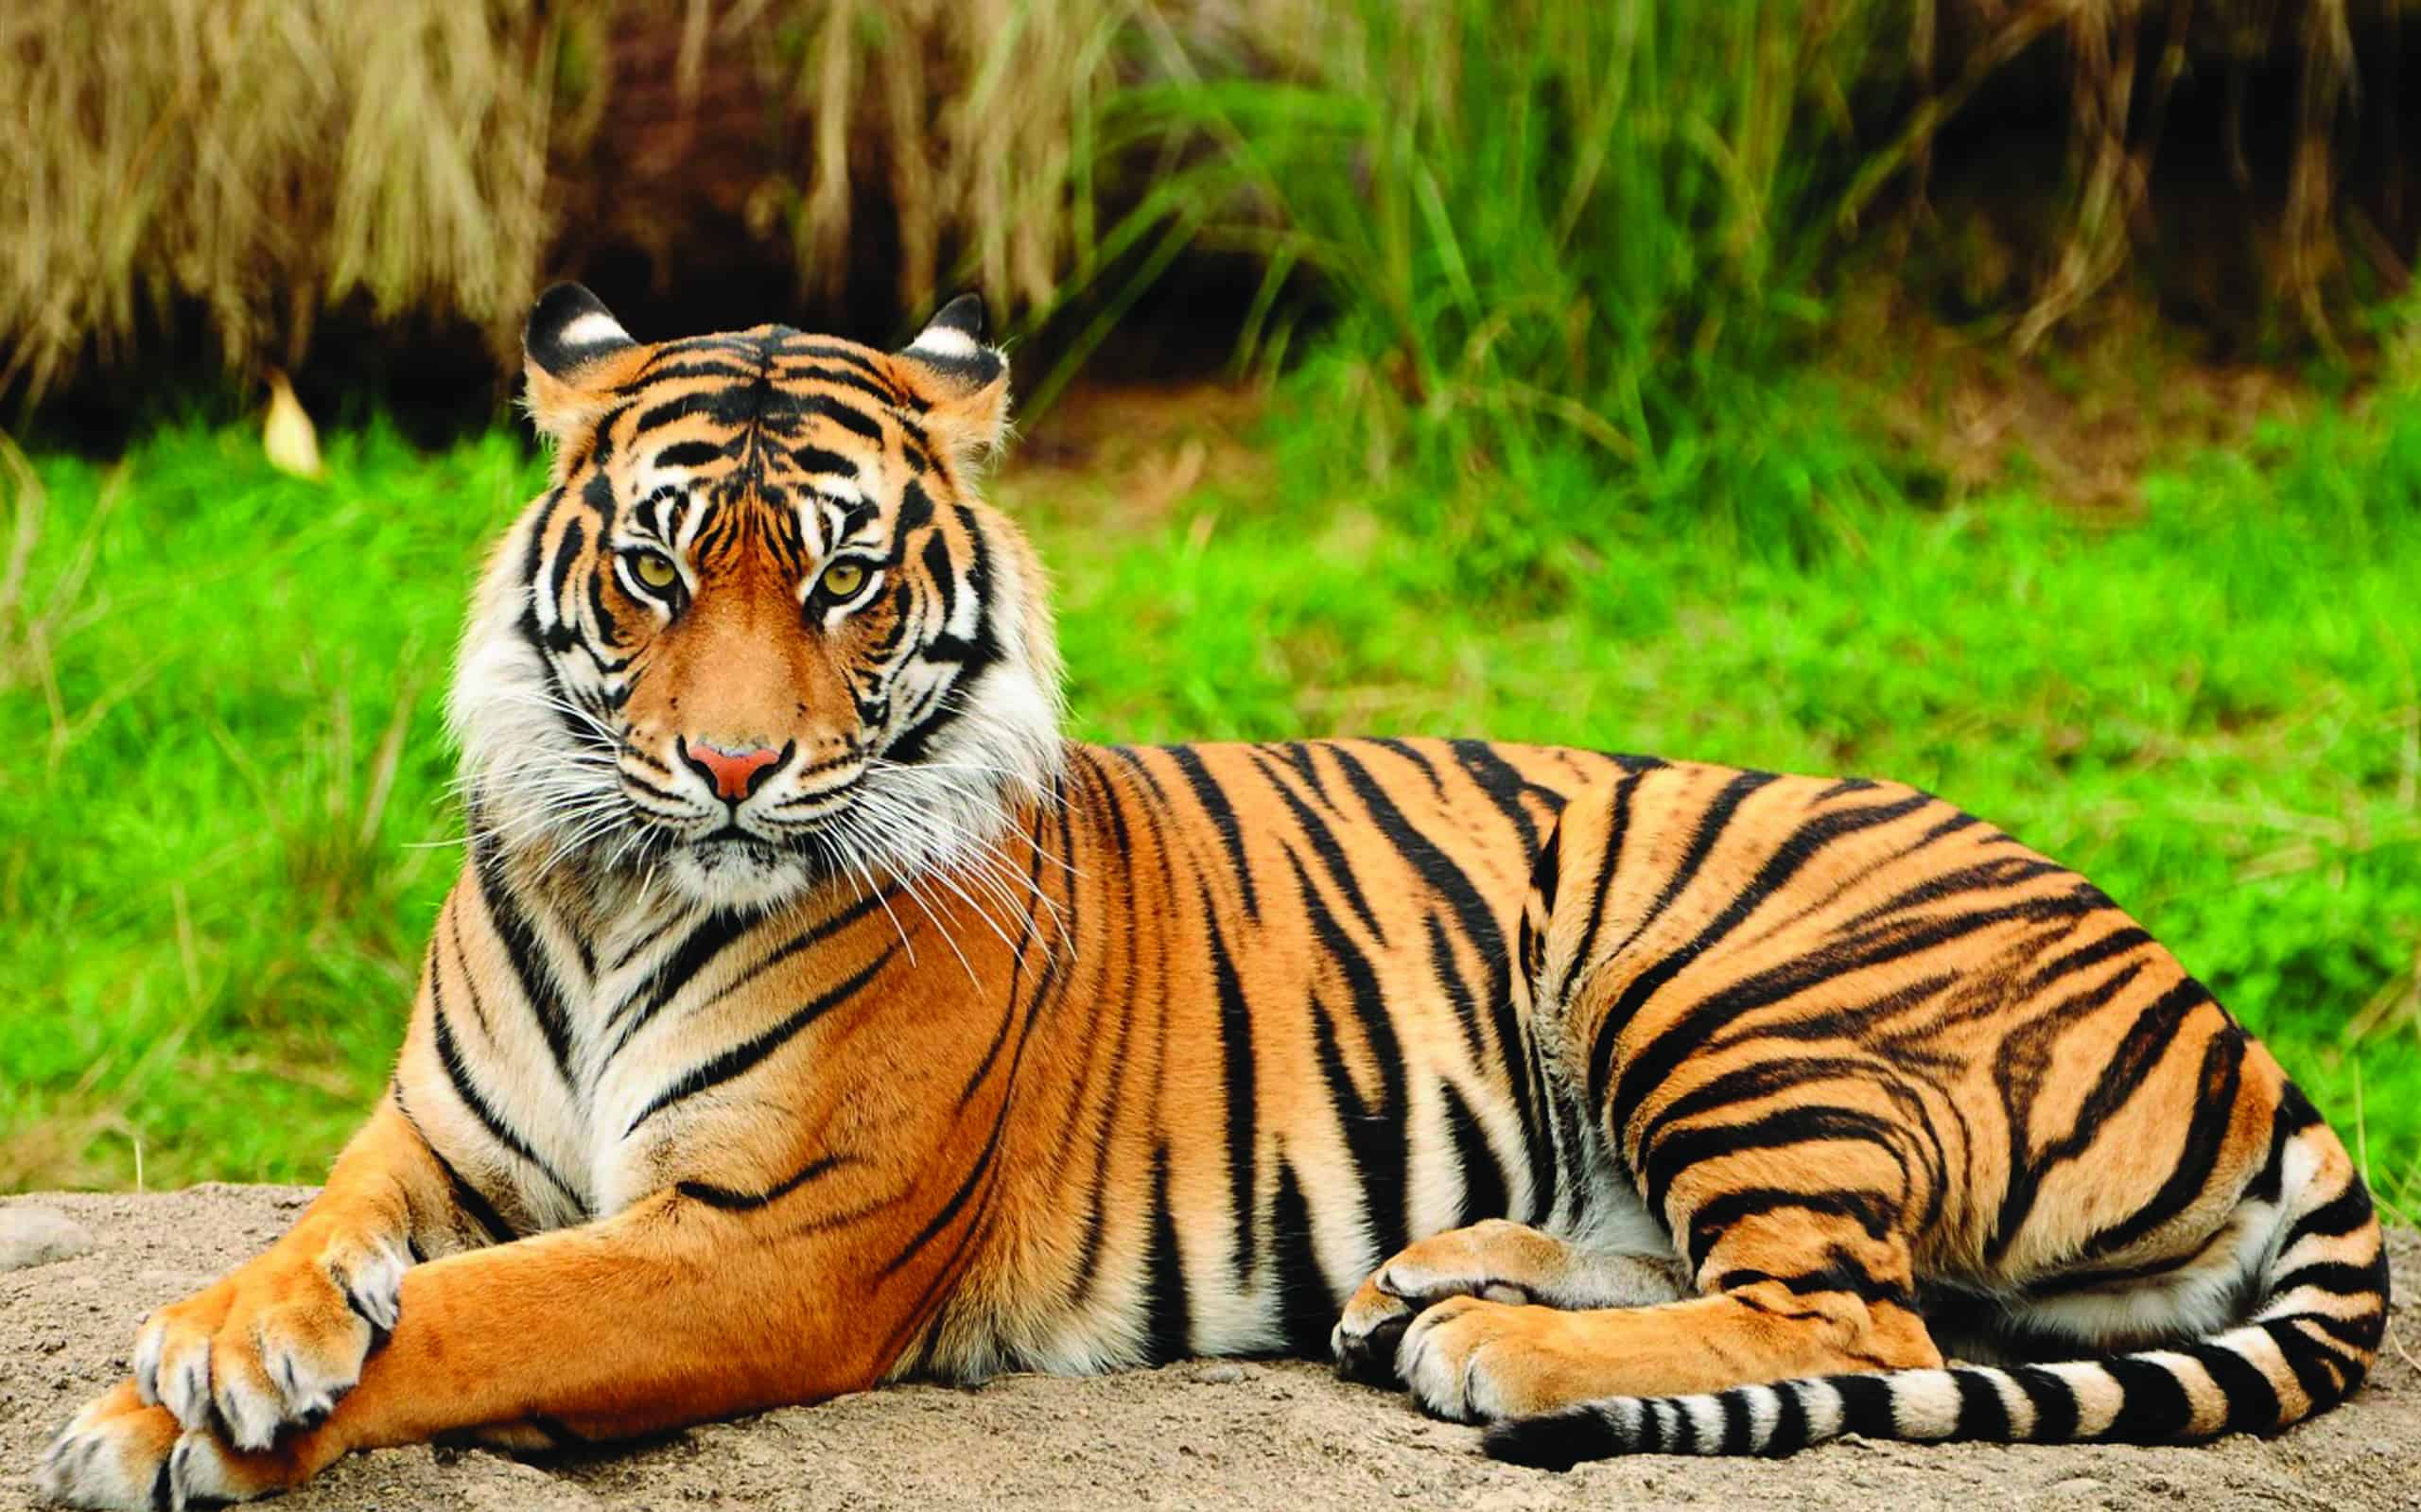 Portrait of a Royal Bengal Tiger alert and Staring at the Camera. National Animal of Bangladesh